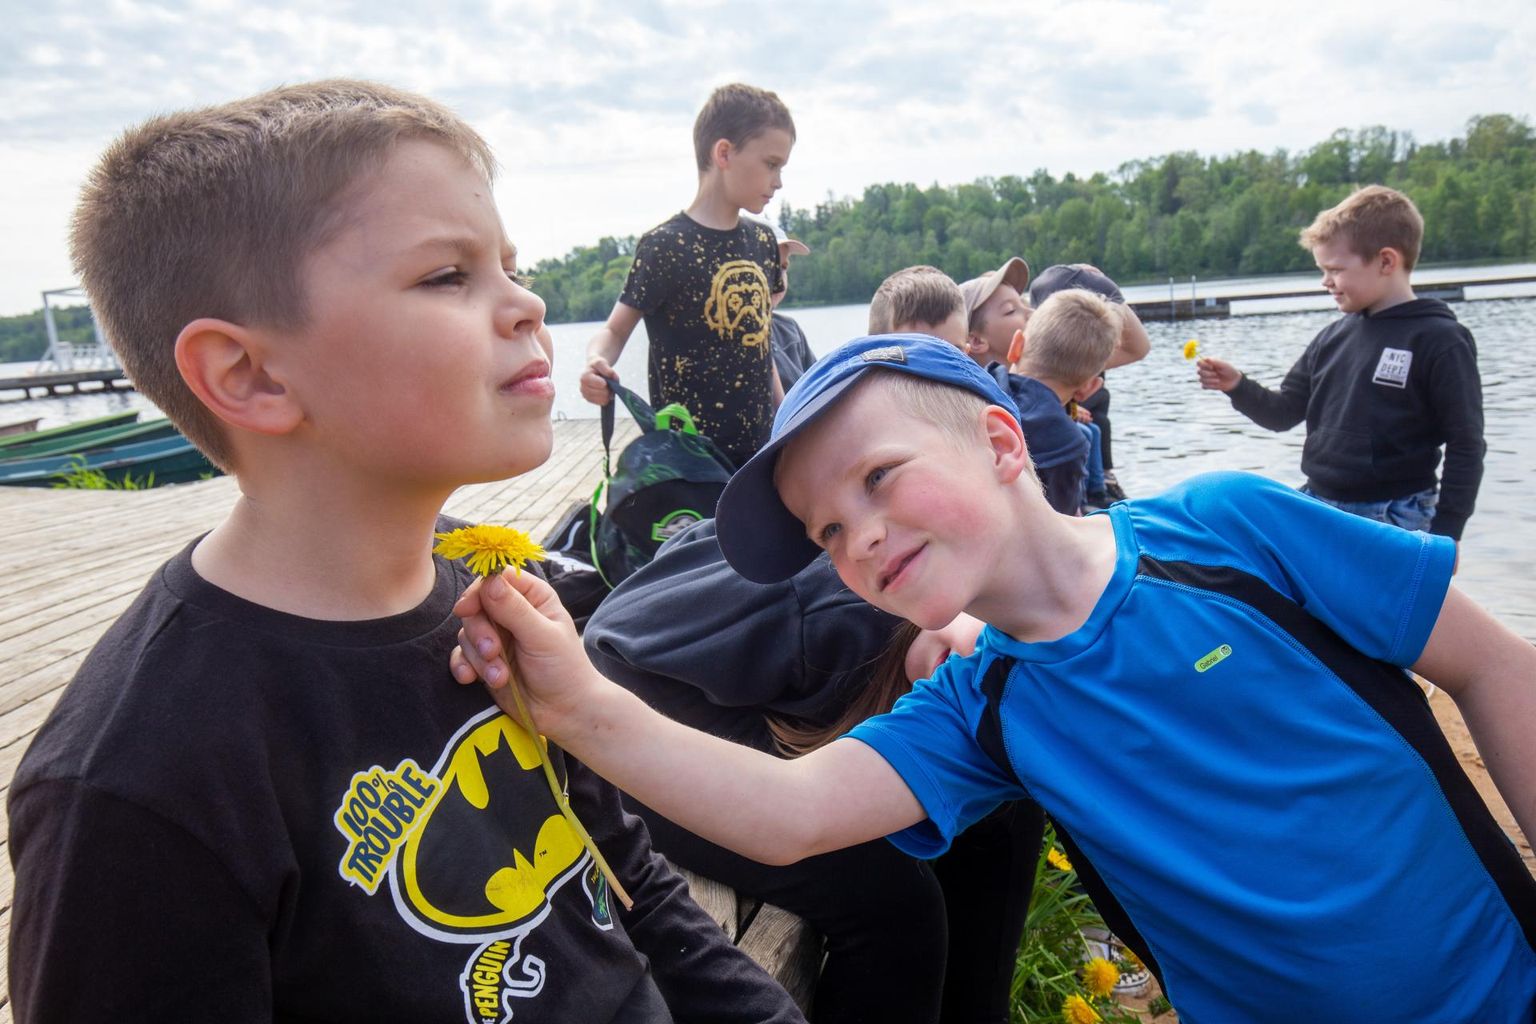 Täna on lastekaitsepäev ja Viljandi Jakobsoni kooli õpilased võtsid ette ühise matka Viljandi järve äärde, kus jagus erinevaid tegevusi nii spordiväljakutel kui töötubades. Võilille abil tehti selgeks, kui palju on sõbrad võid söönud.